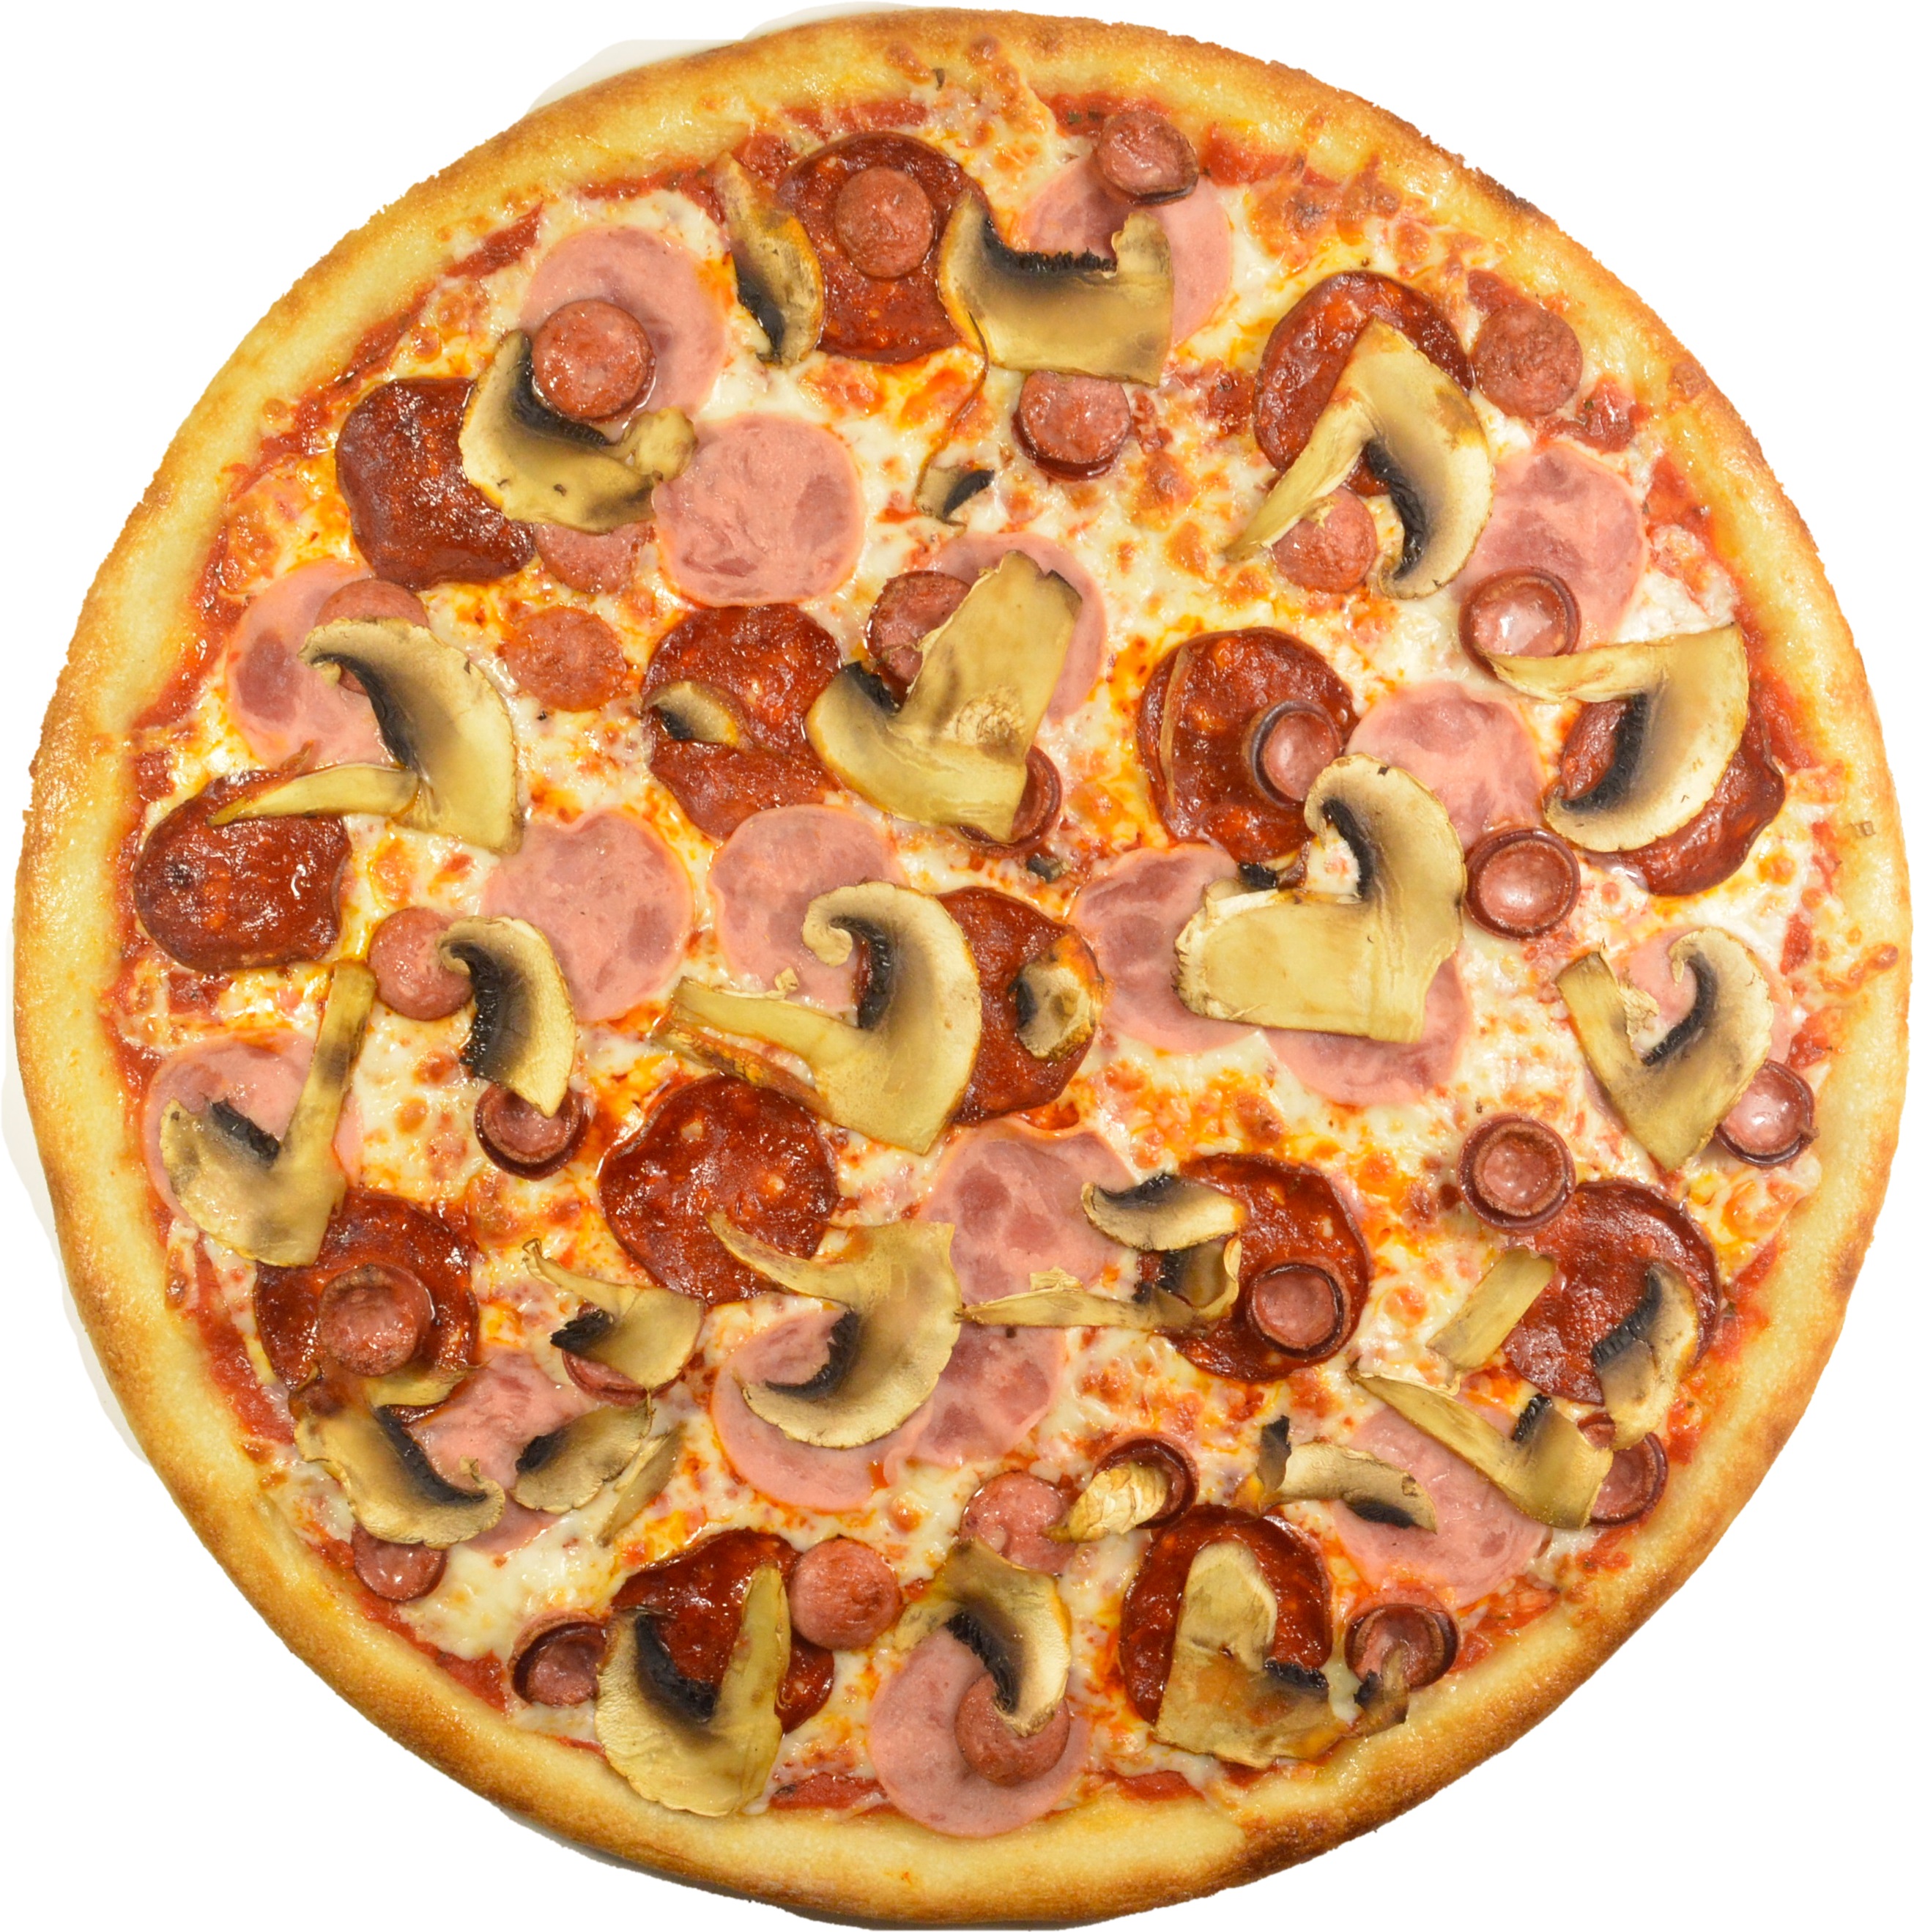 я хочу пиццу наполовину с беконом и сосисками и наполовину с пепперони и ветчиной фото 10